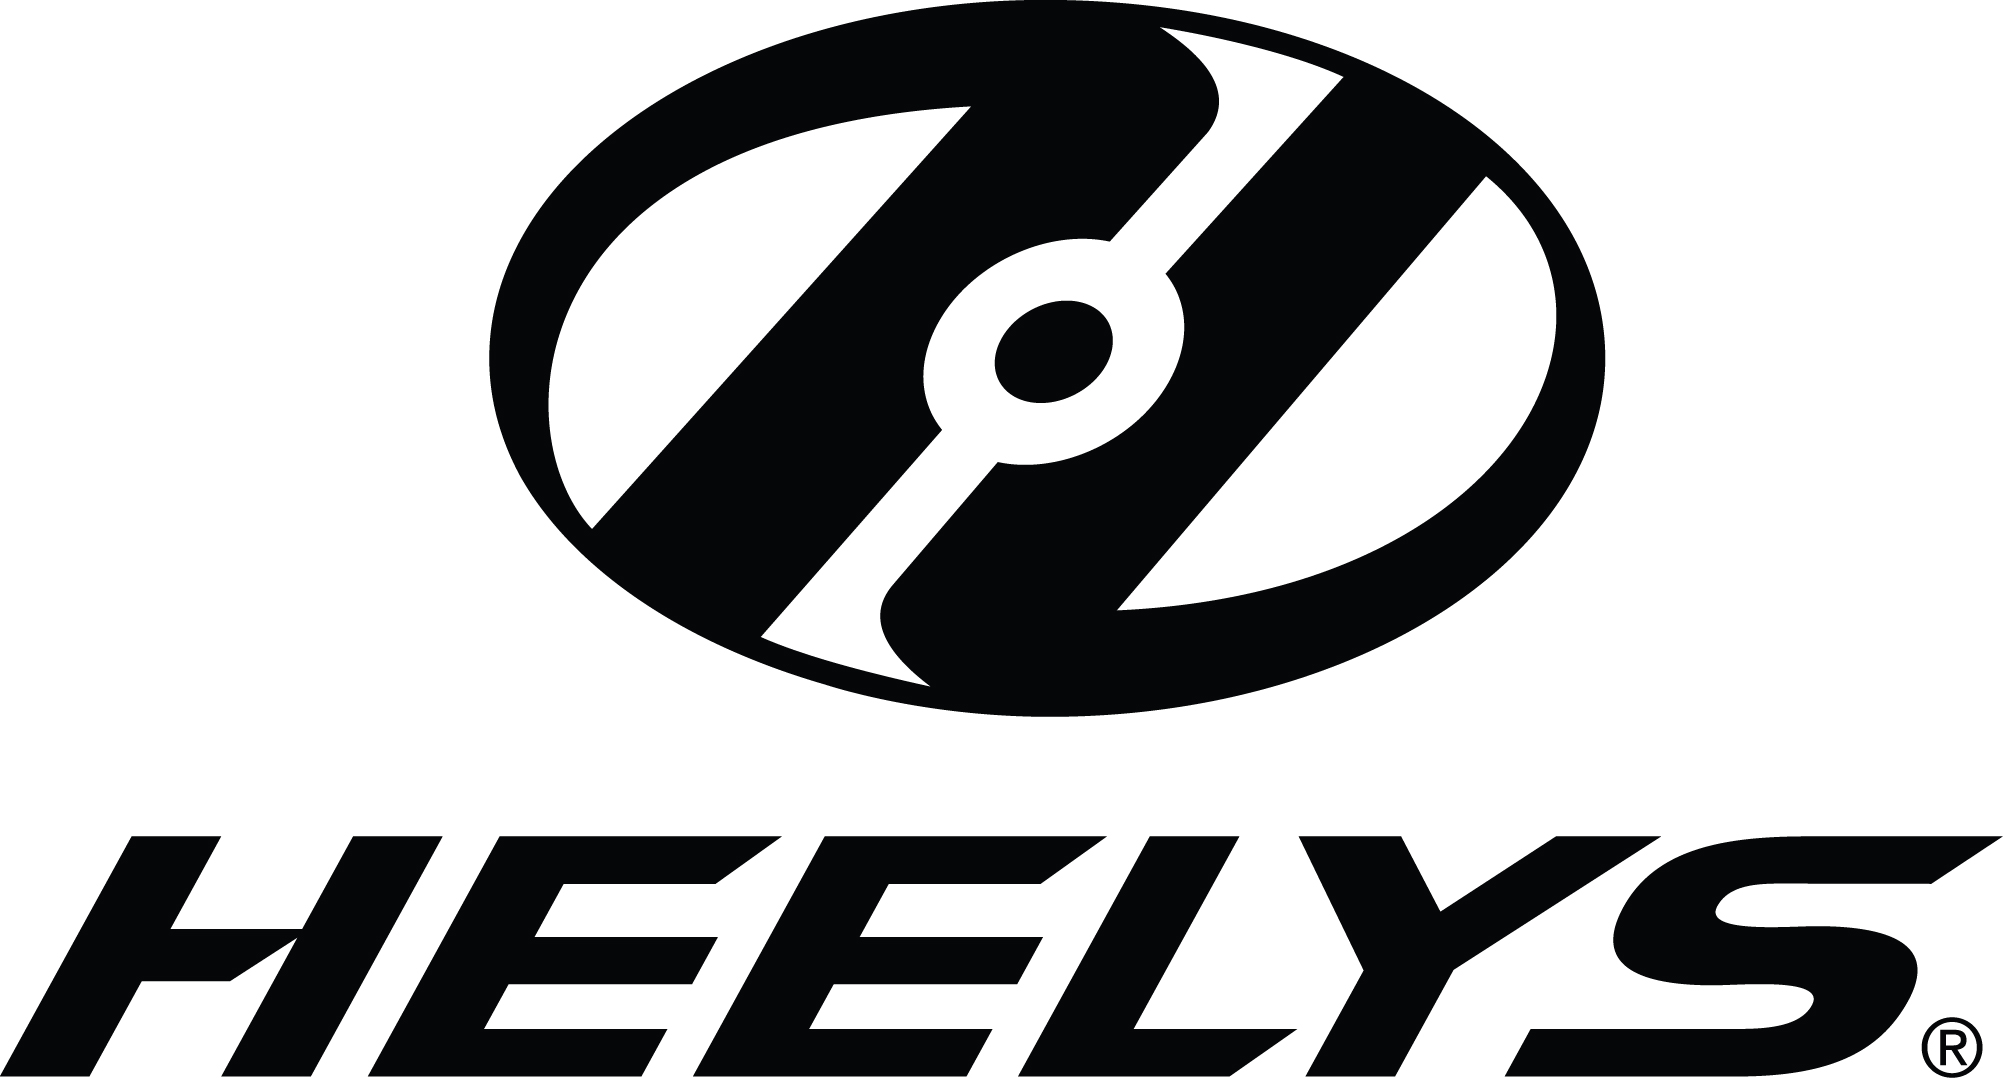 Bedste tilbud på Heelys-produkter - PriceRunner »